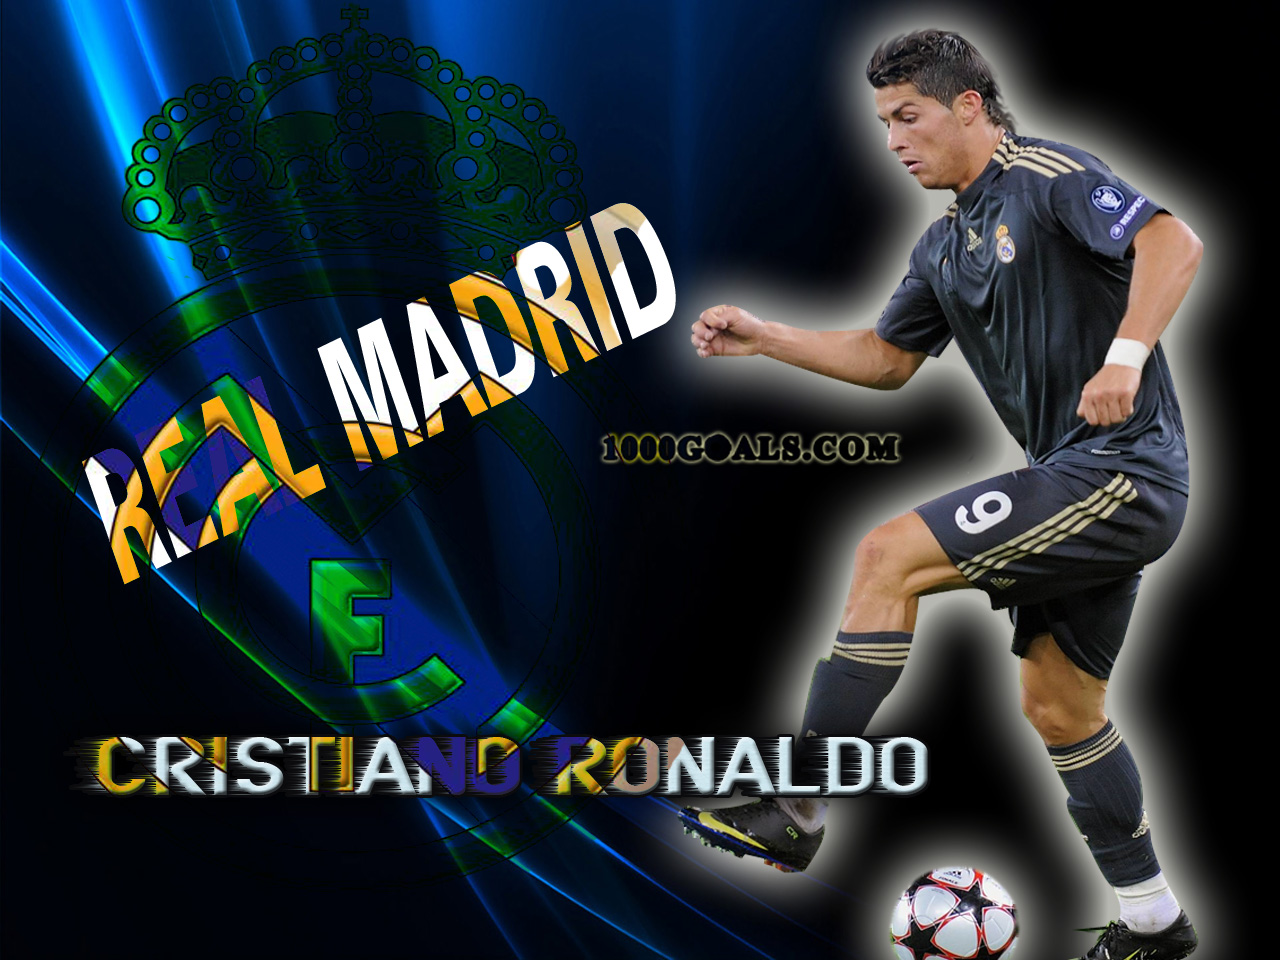 http://4.bp.blogspot.com/-fSnEOt2s-78/TamwAjDuTmI/AAAAAAAAAik/hhpCTVpzV7c/s1600/Cristiano-Ronaldo-Real-Madrid-03.jpg